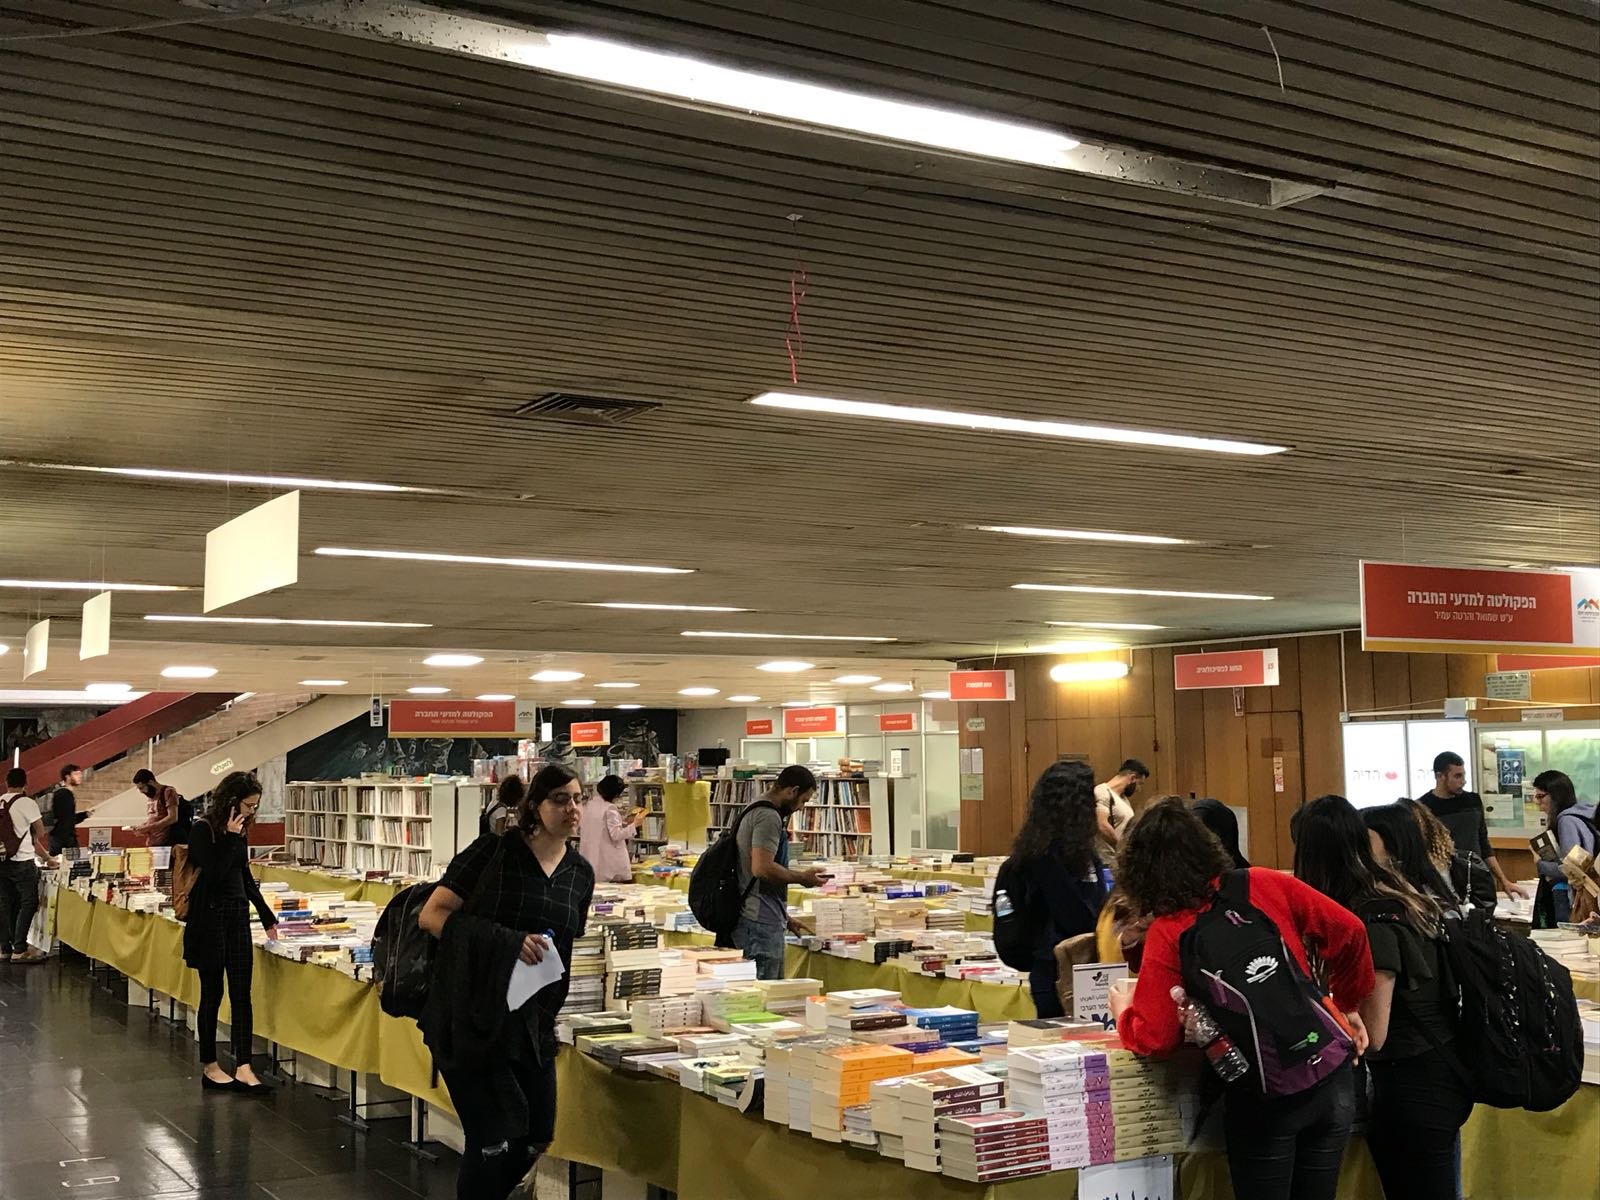 النجاح الكبير والضخم لمعرض الكتاب المقام في جامعة حيفا - والمستمر حتى 10.05.2018-9